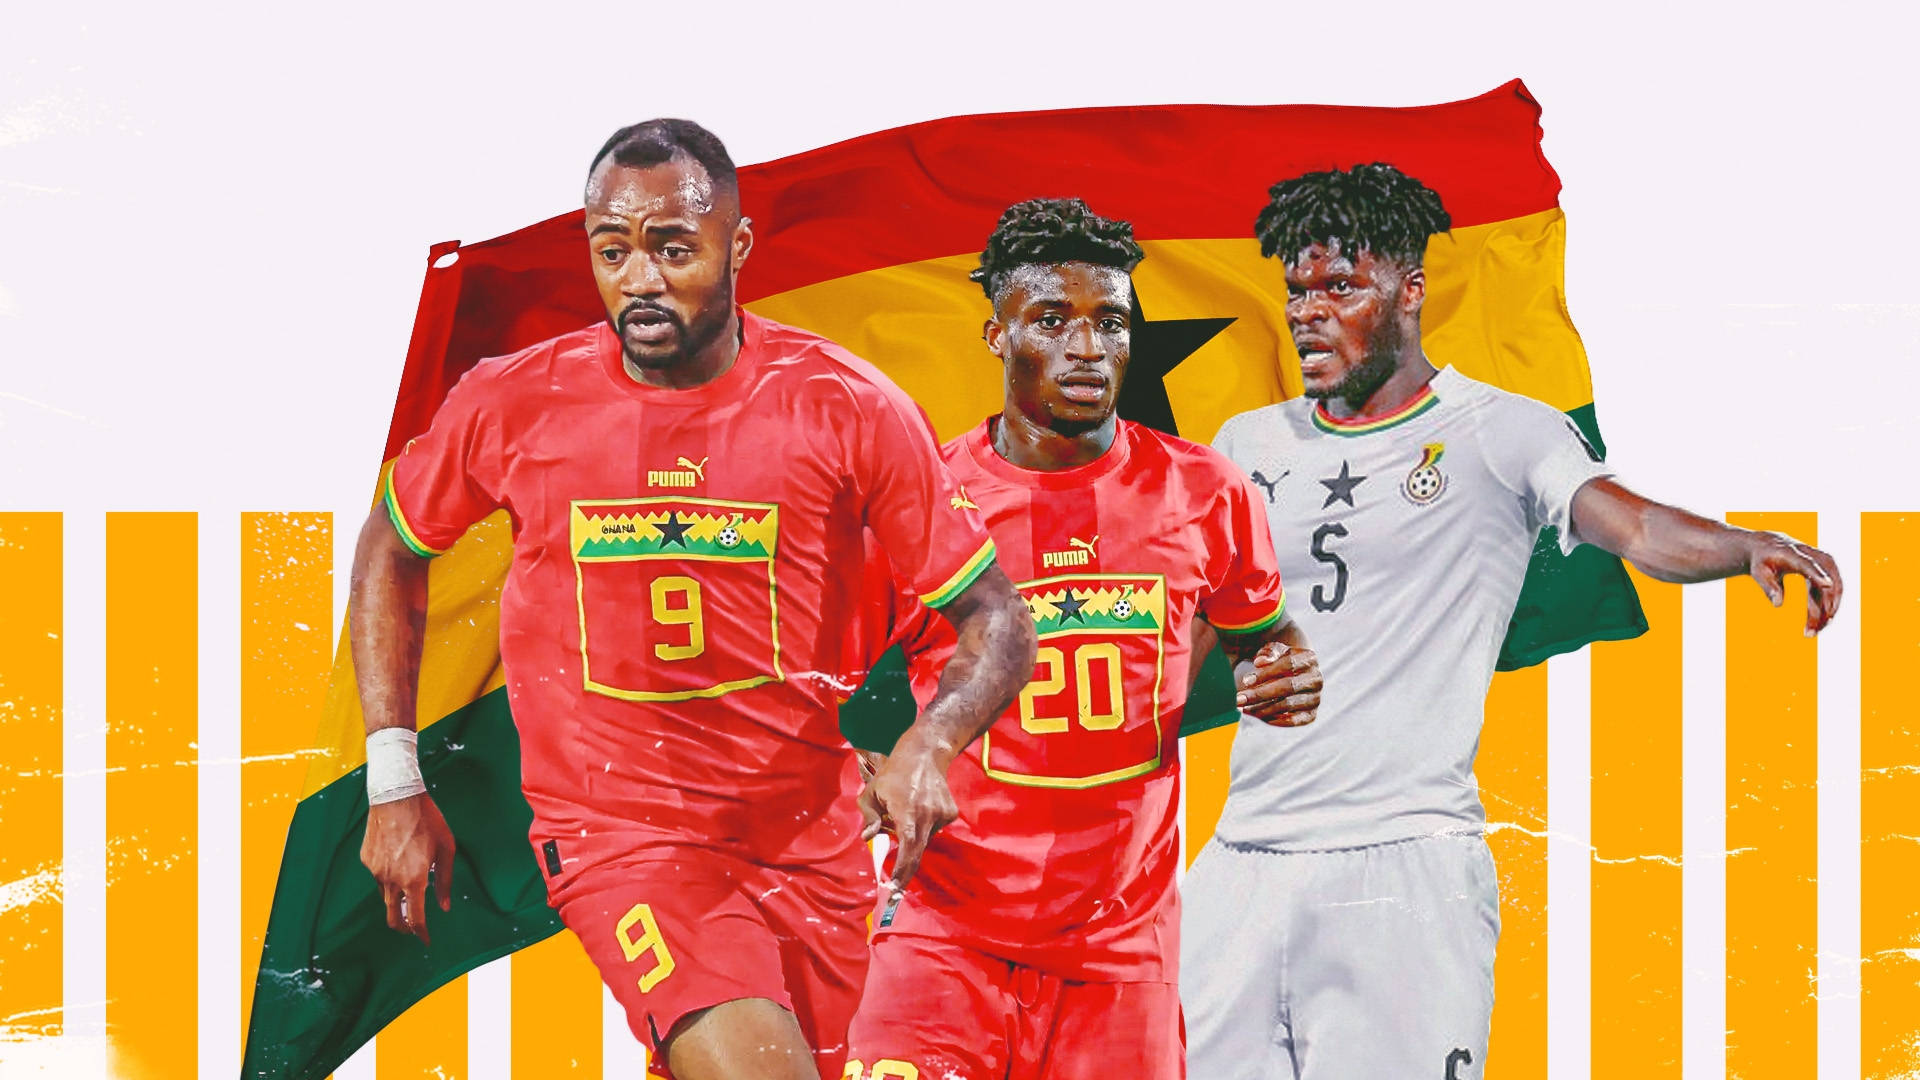 Ghana National Football Team Standard Bearers Wallpaper